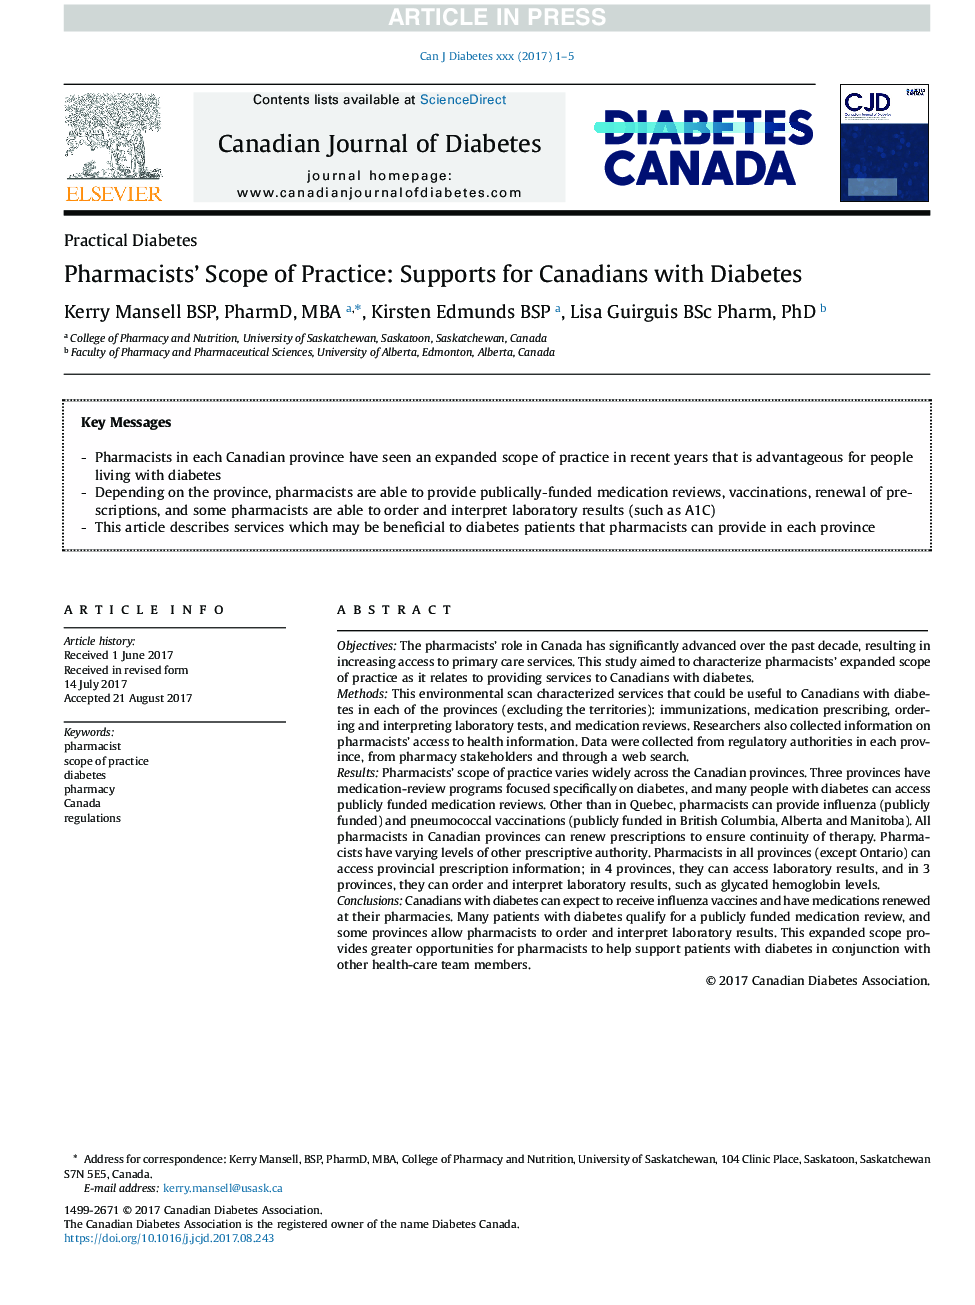 محدوده تمرین داروخانه ها: پشتیبانی از کانادا برای افراد مبتلا به دیابت 